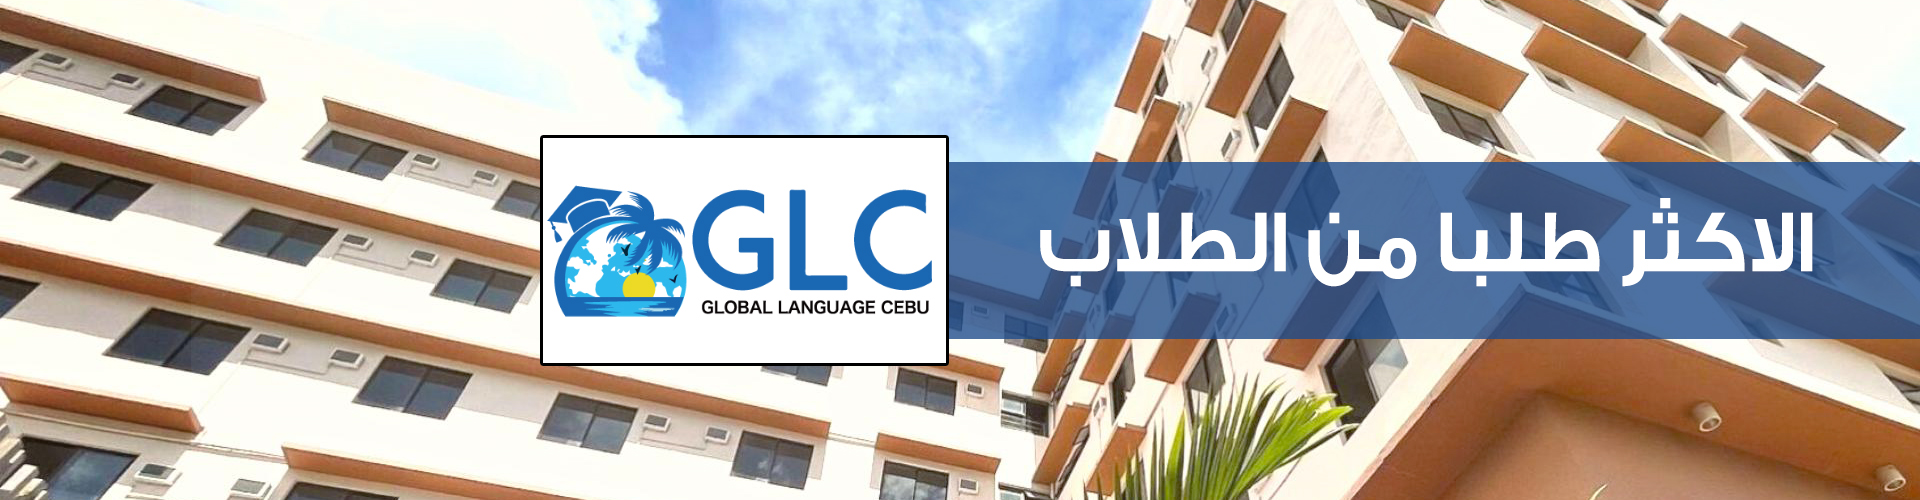 لتعليم اللغة الانجليزية في سيبو GLC معهد